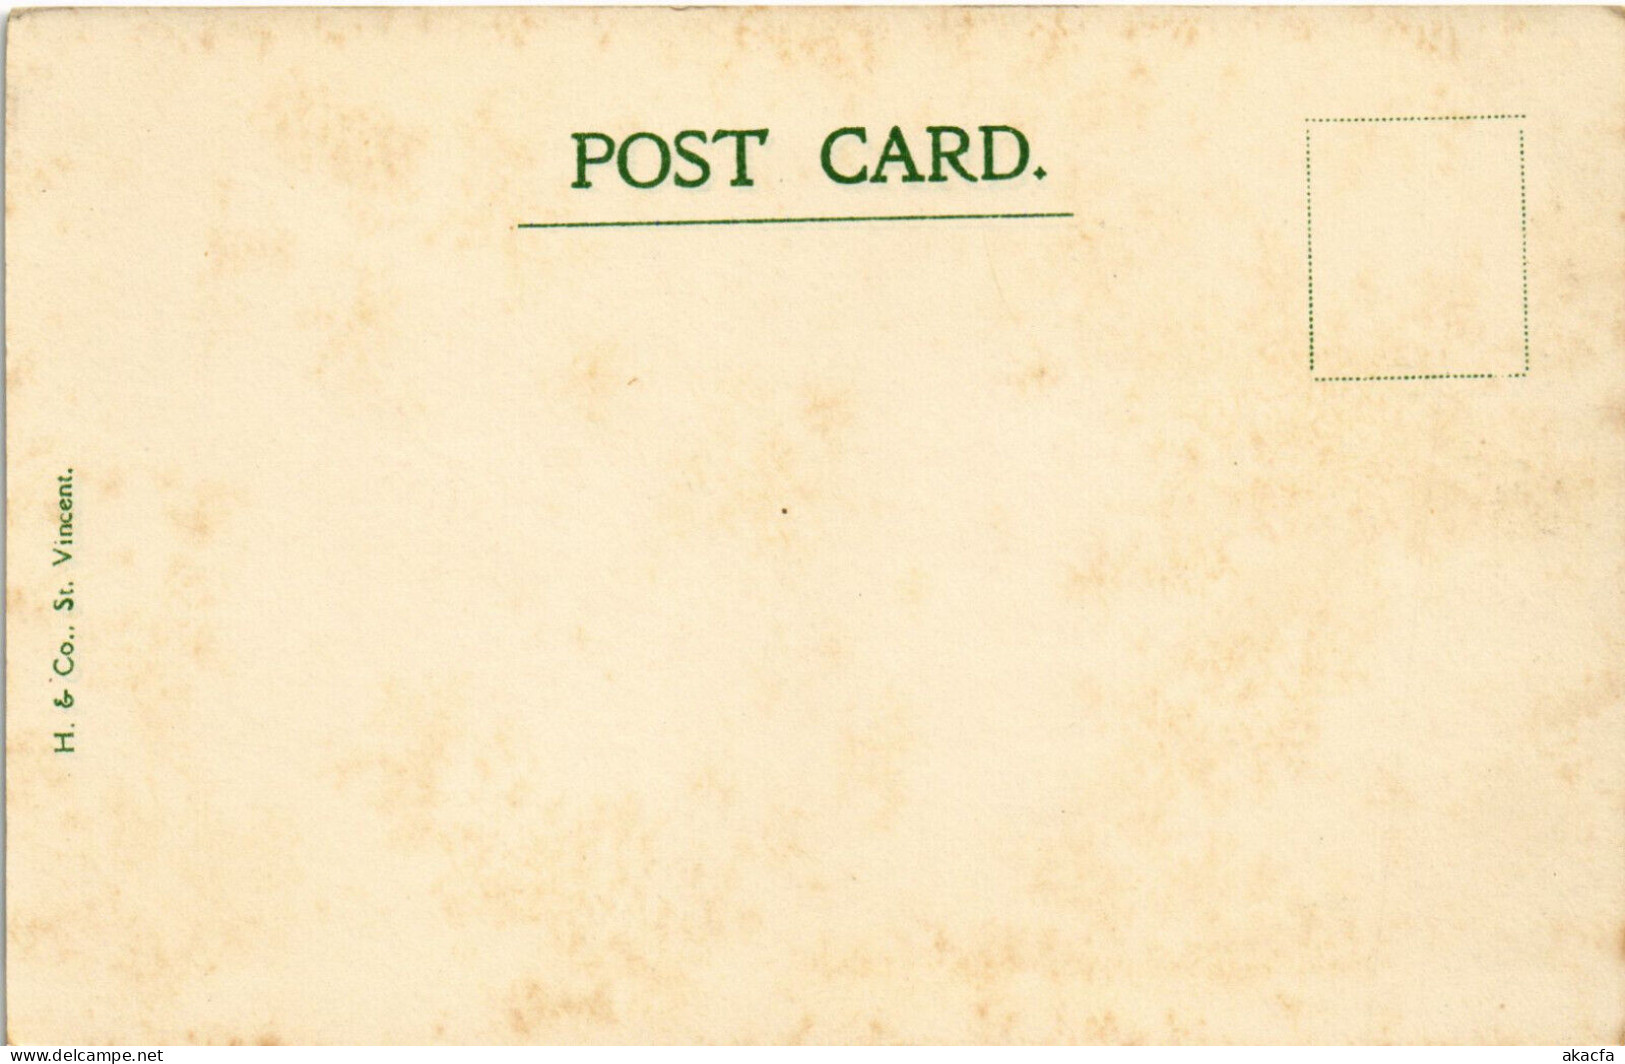 PC VIRGIN ISLANDS NEW VILLAGE FRENCHES Vintage Postcard (b52257) - Vierges (Iles), Britann.